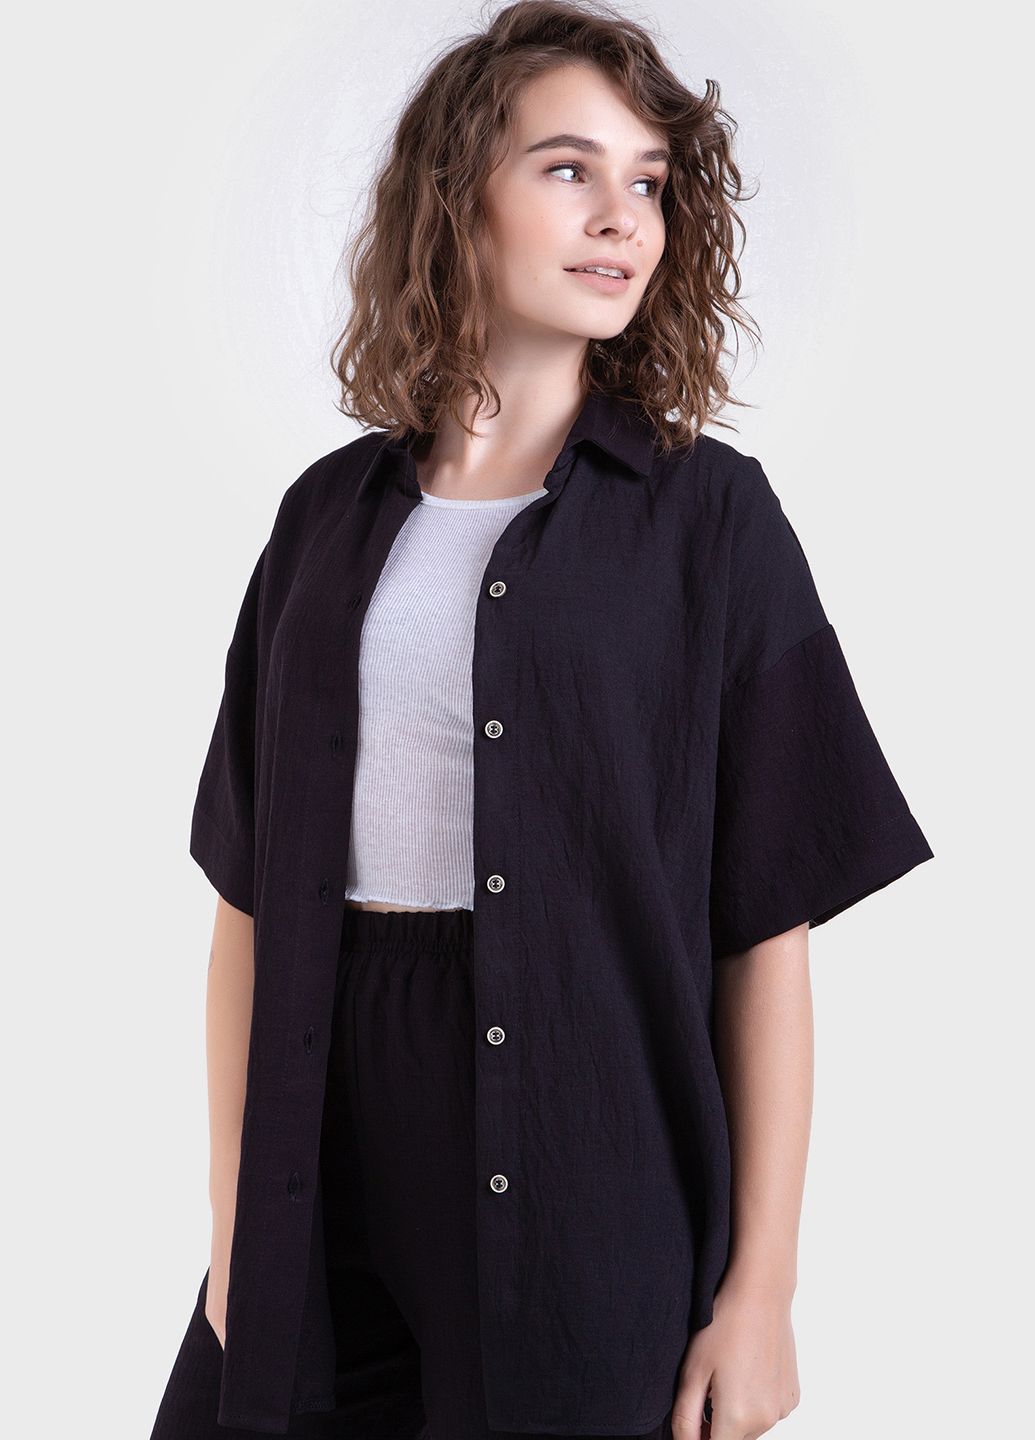 Купить Оверсайз рубашка женская черного цвета из льна-жатки Merlini Авеллино 200000064, размер 42-44 в интернет-магазине